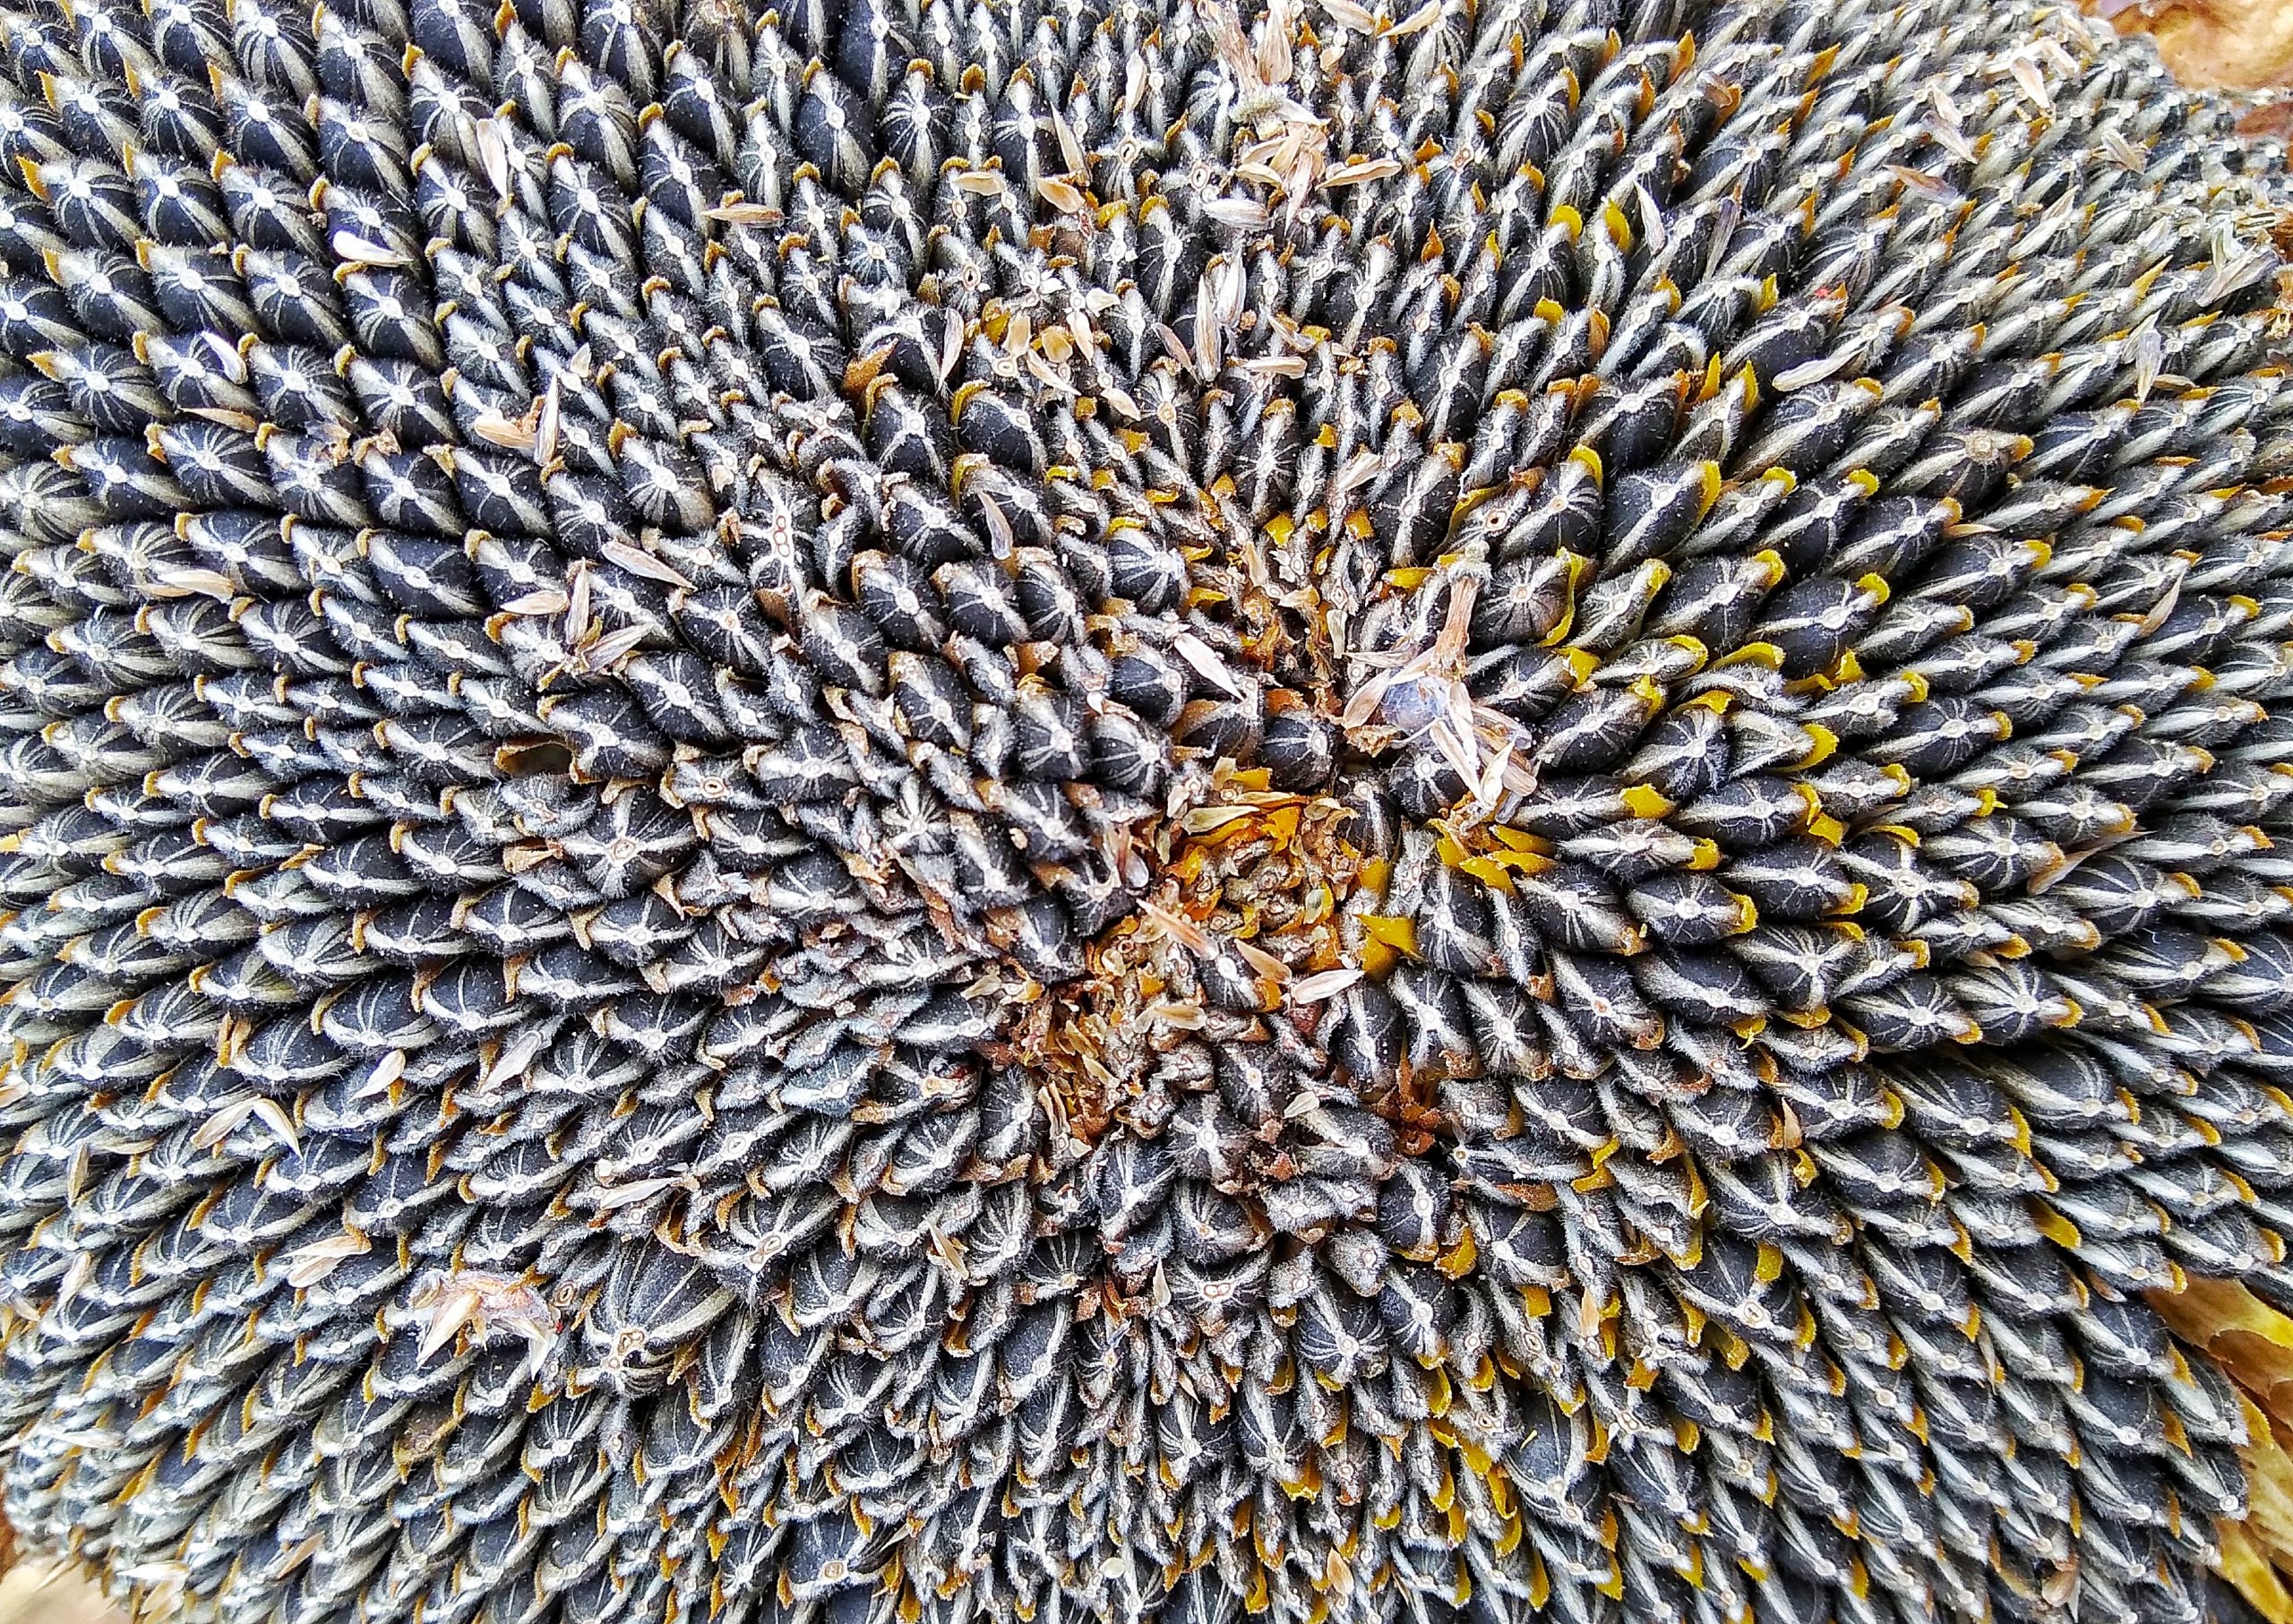 Seeds of sunflower